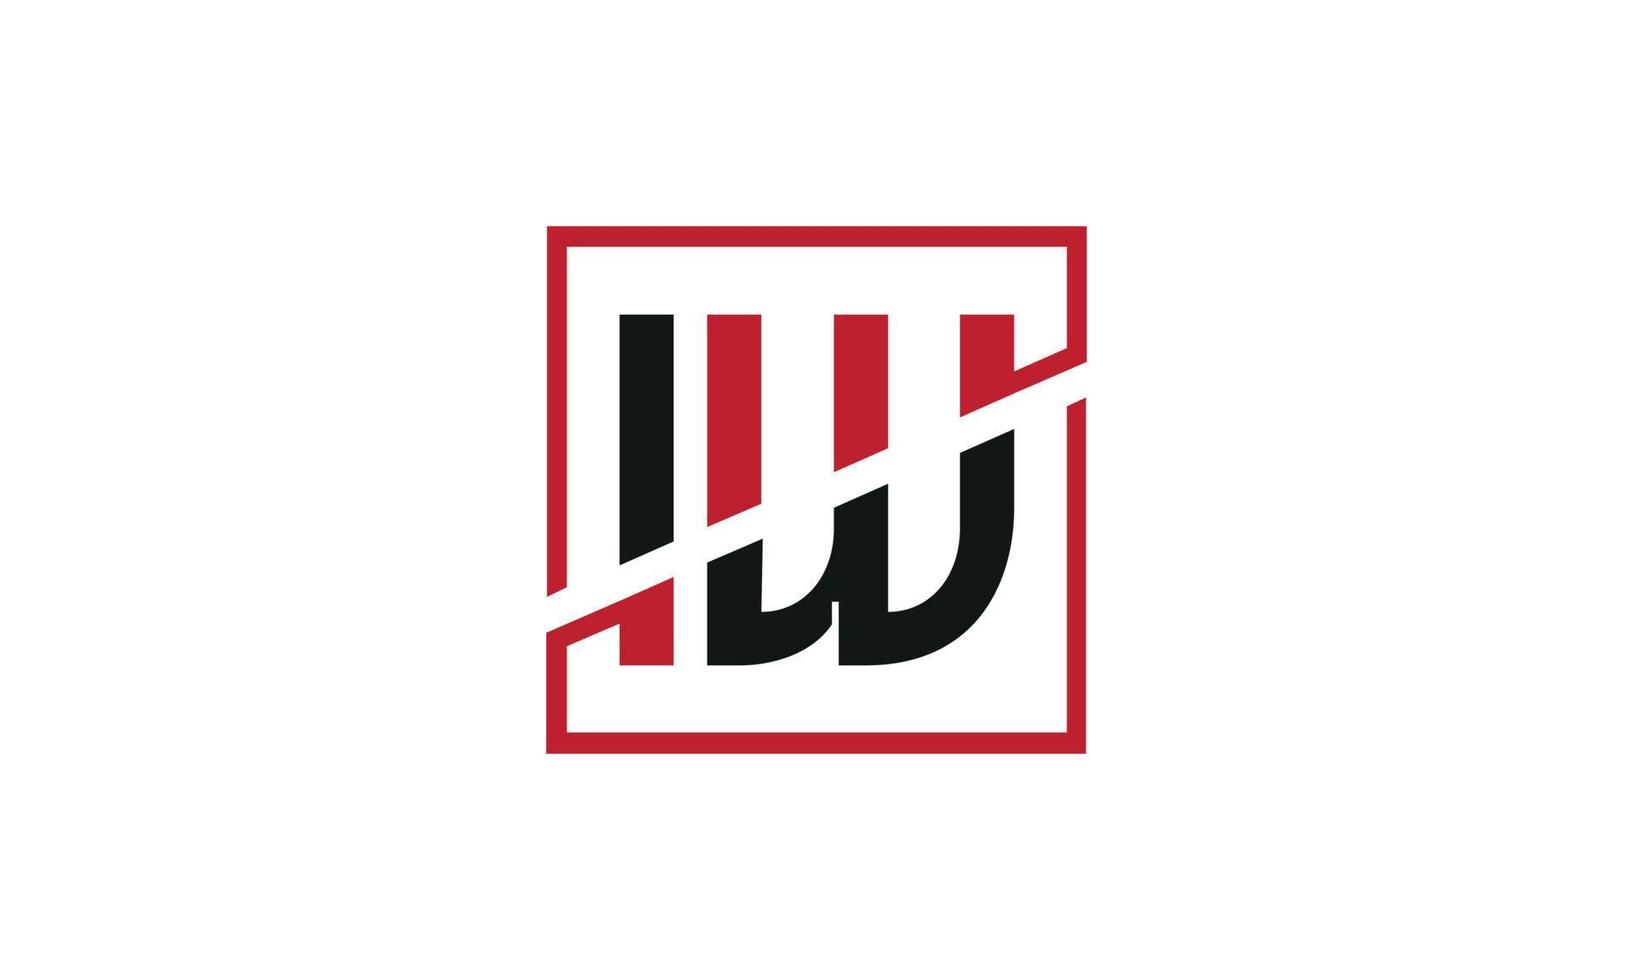 lettre iw logo pro fichier vectoriel vecteur pro